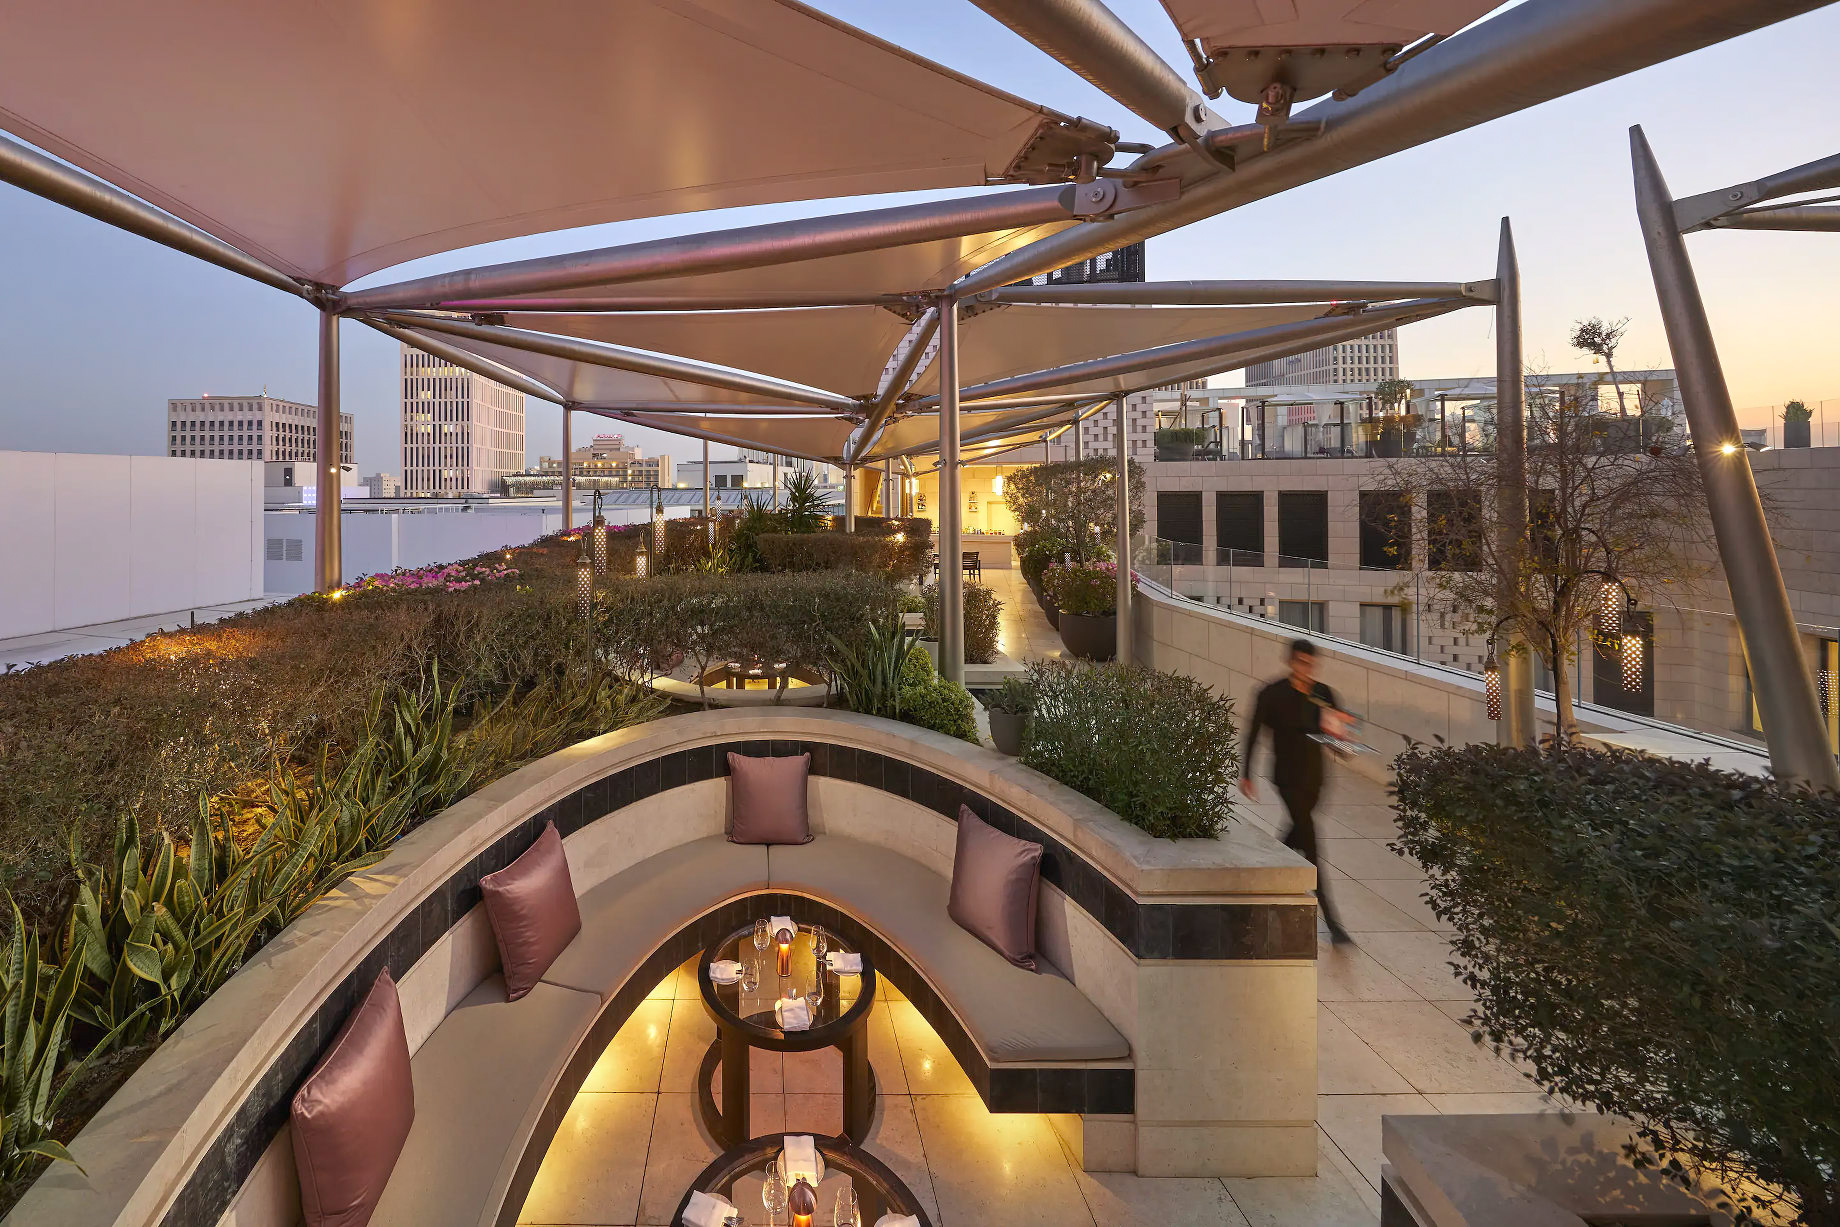 Mandarin Oriental, Doha Hotel – Doha, Qatar – Aqua Rooftop Dining